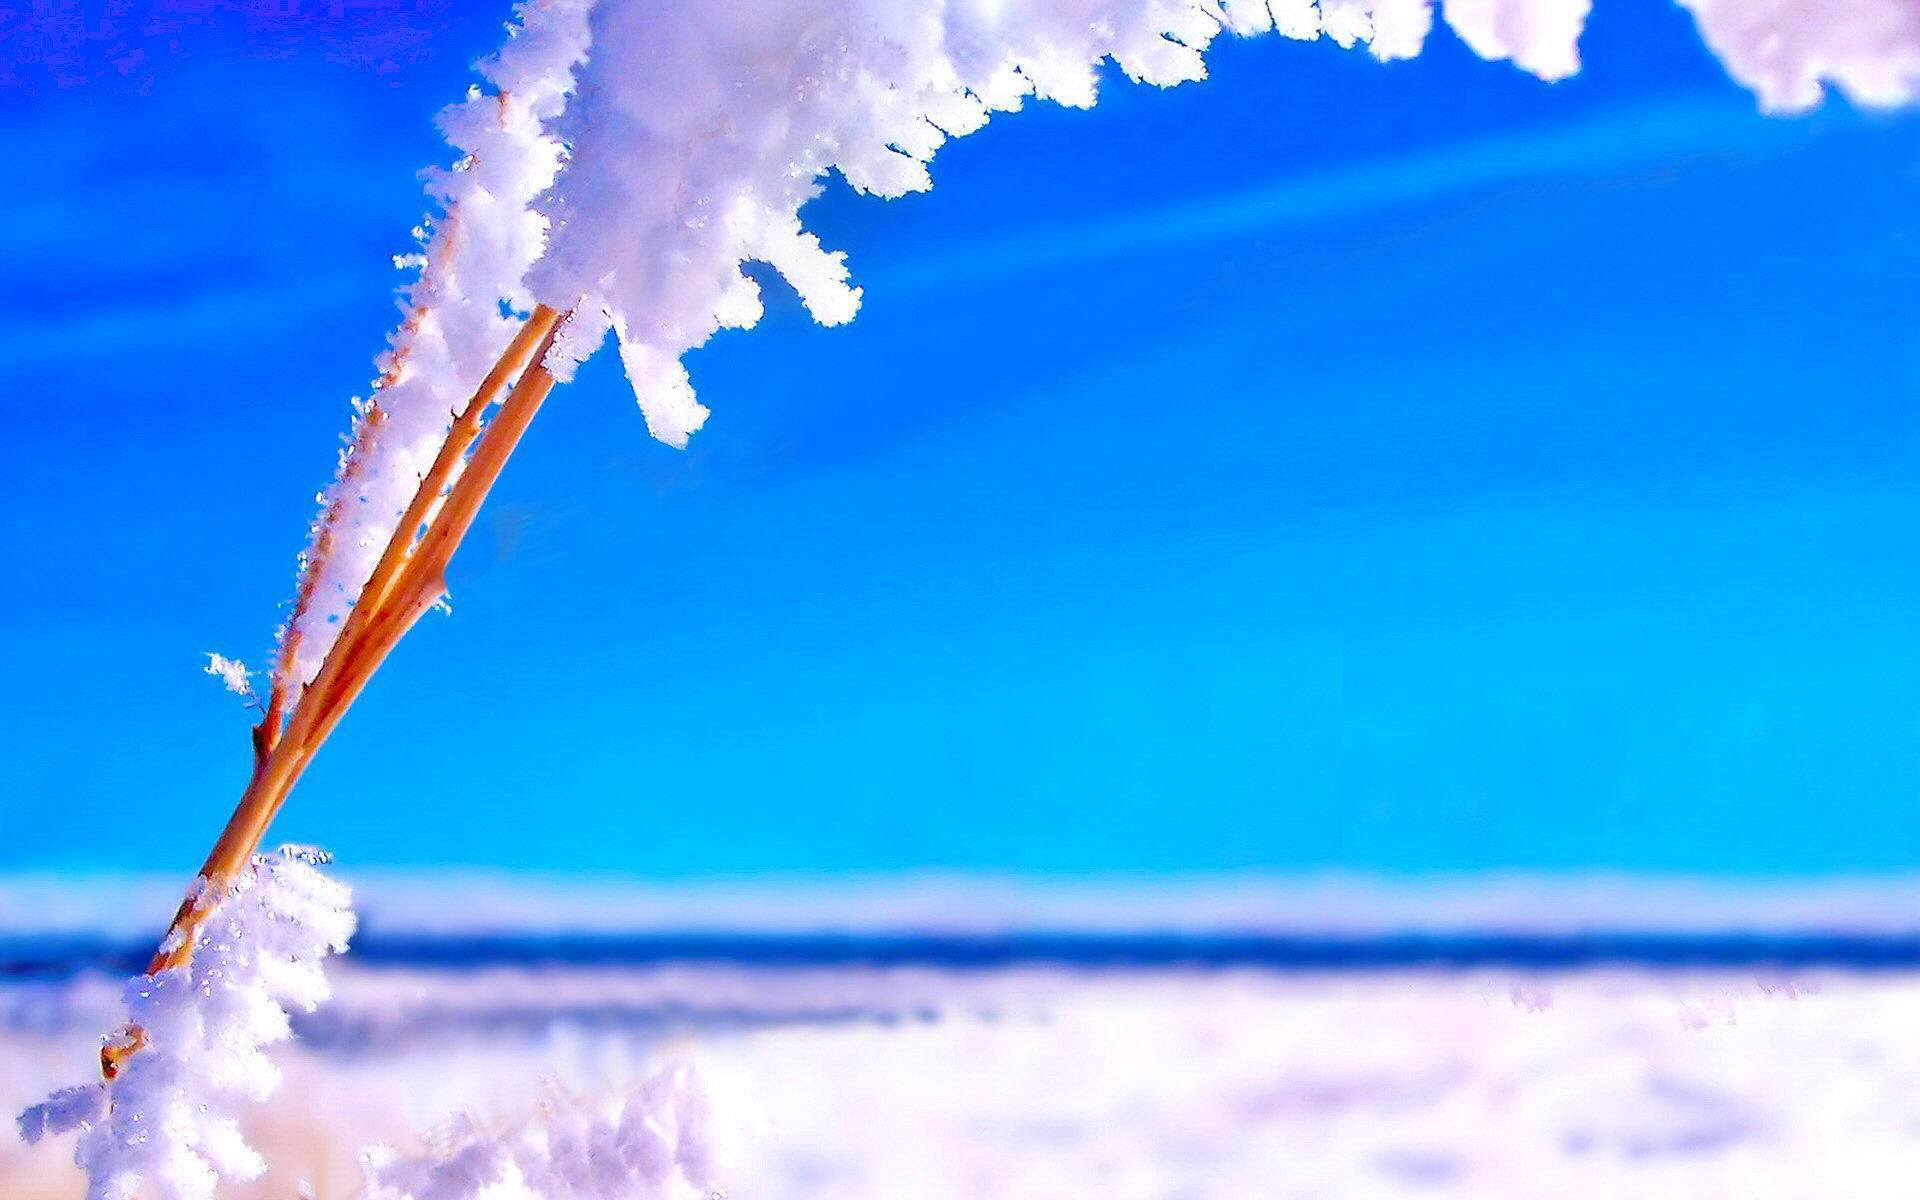 Скачать обои бесплатно Зима, Природа, Небо, Снег, Горизонт, Синий, Земля/природа картинка на рабочий стол ПК